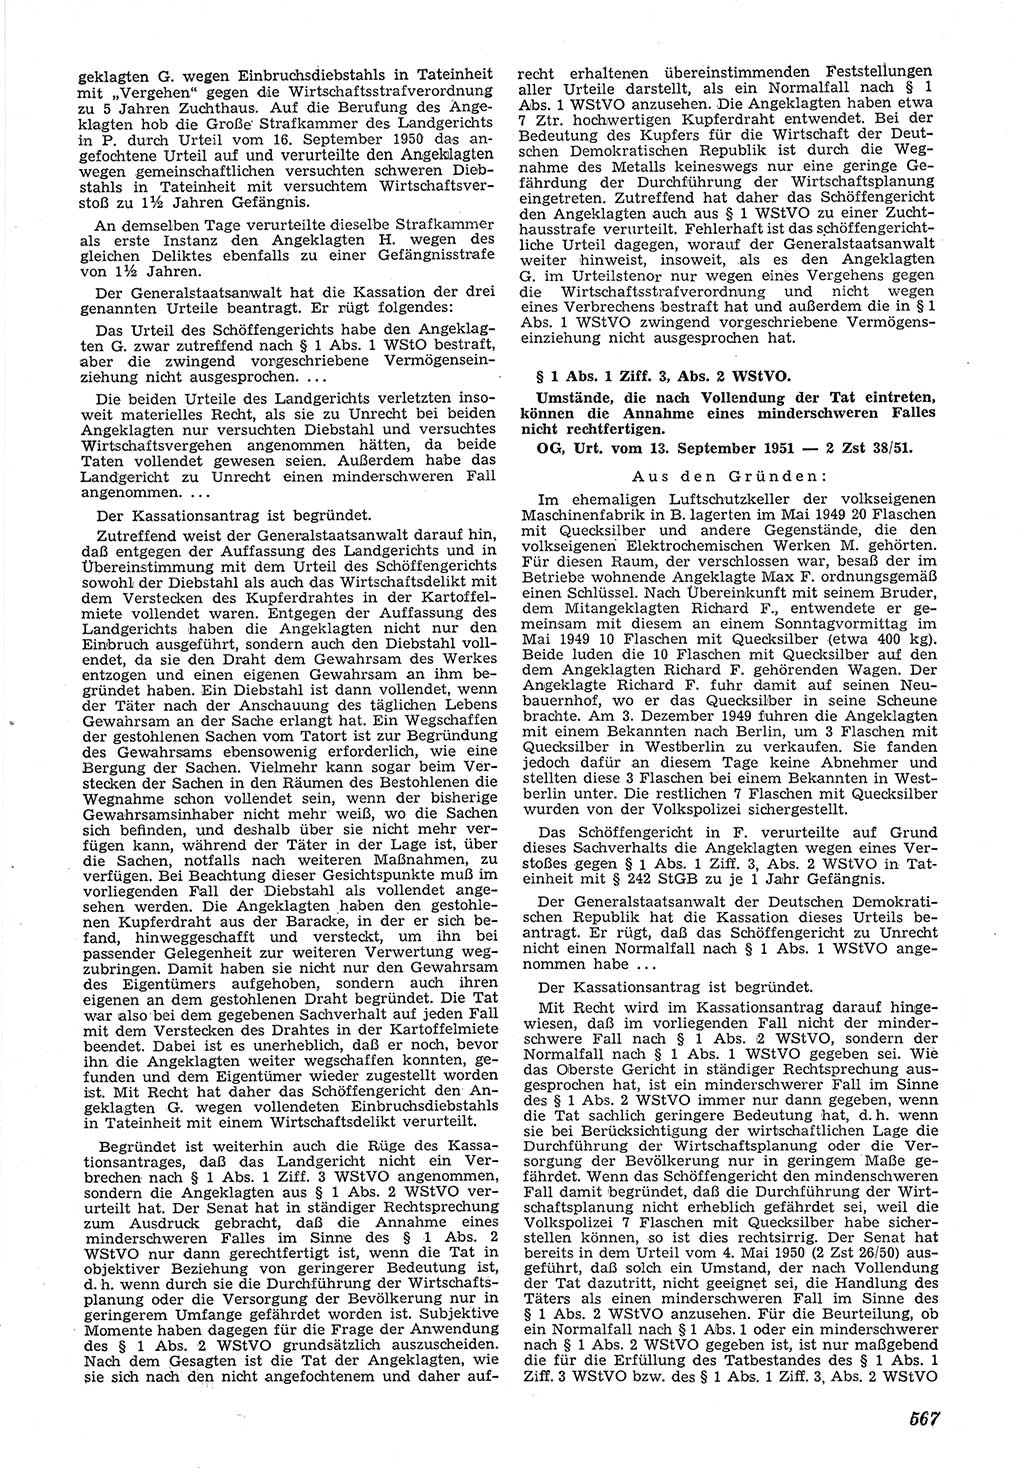 Neue Justiz (NJ), Zeitschrift für Recht und Rechtswissenschaft [Deutsche Demokratische Republik (DDR)], 5. Jahrgang 1951, Seite 567 (NJ DDR 1951, S. 567)